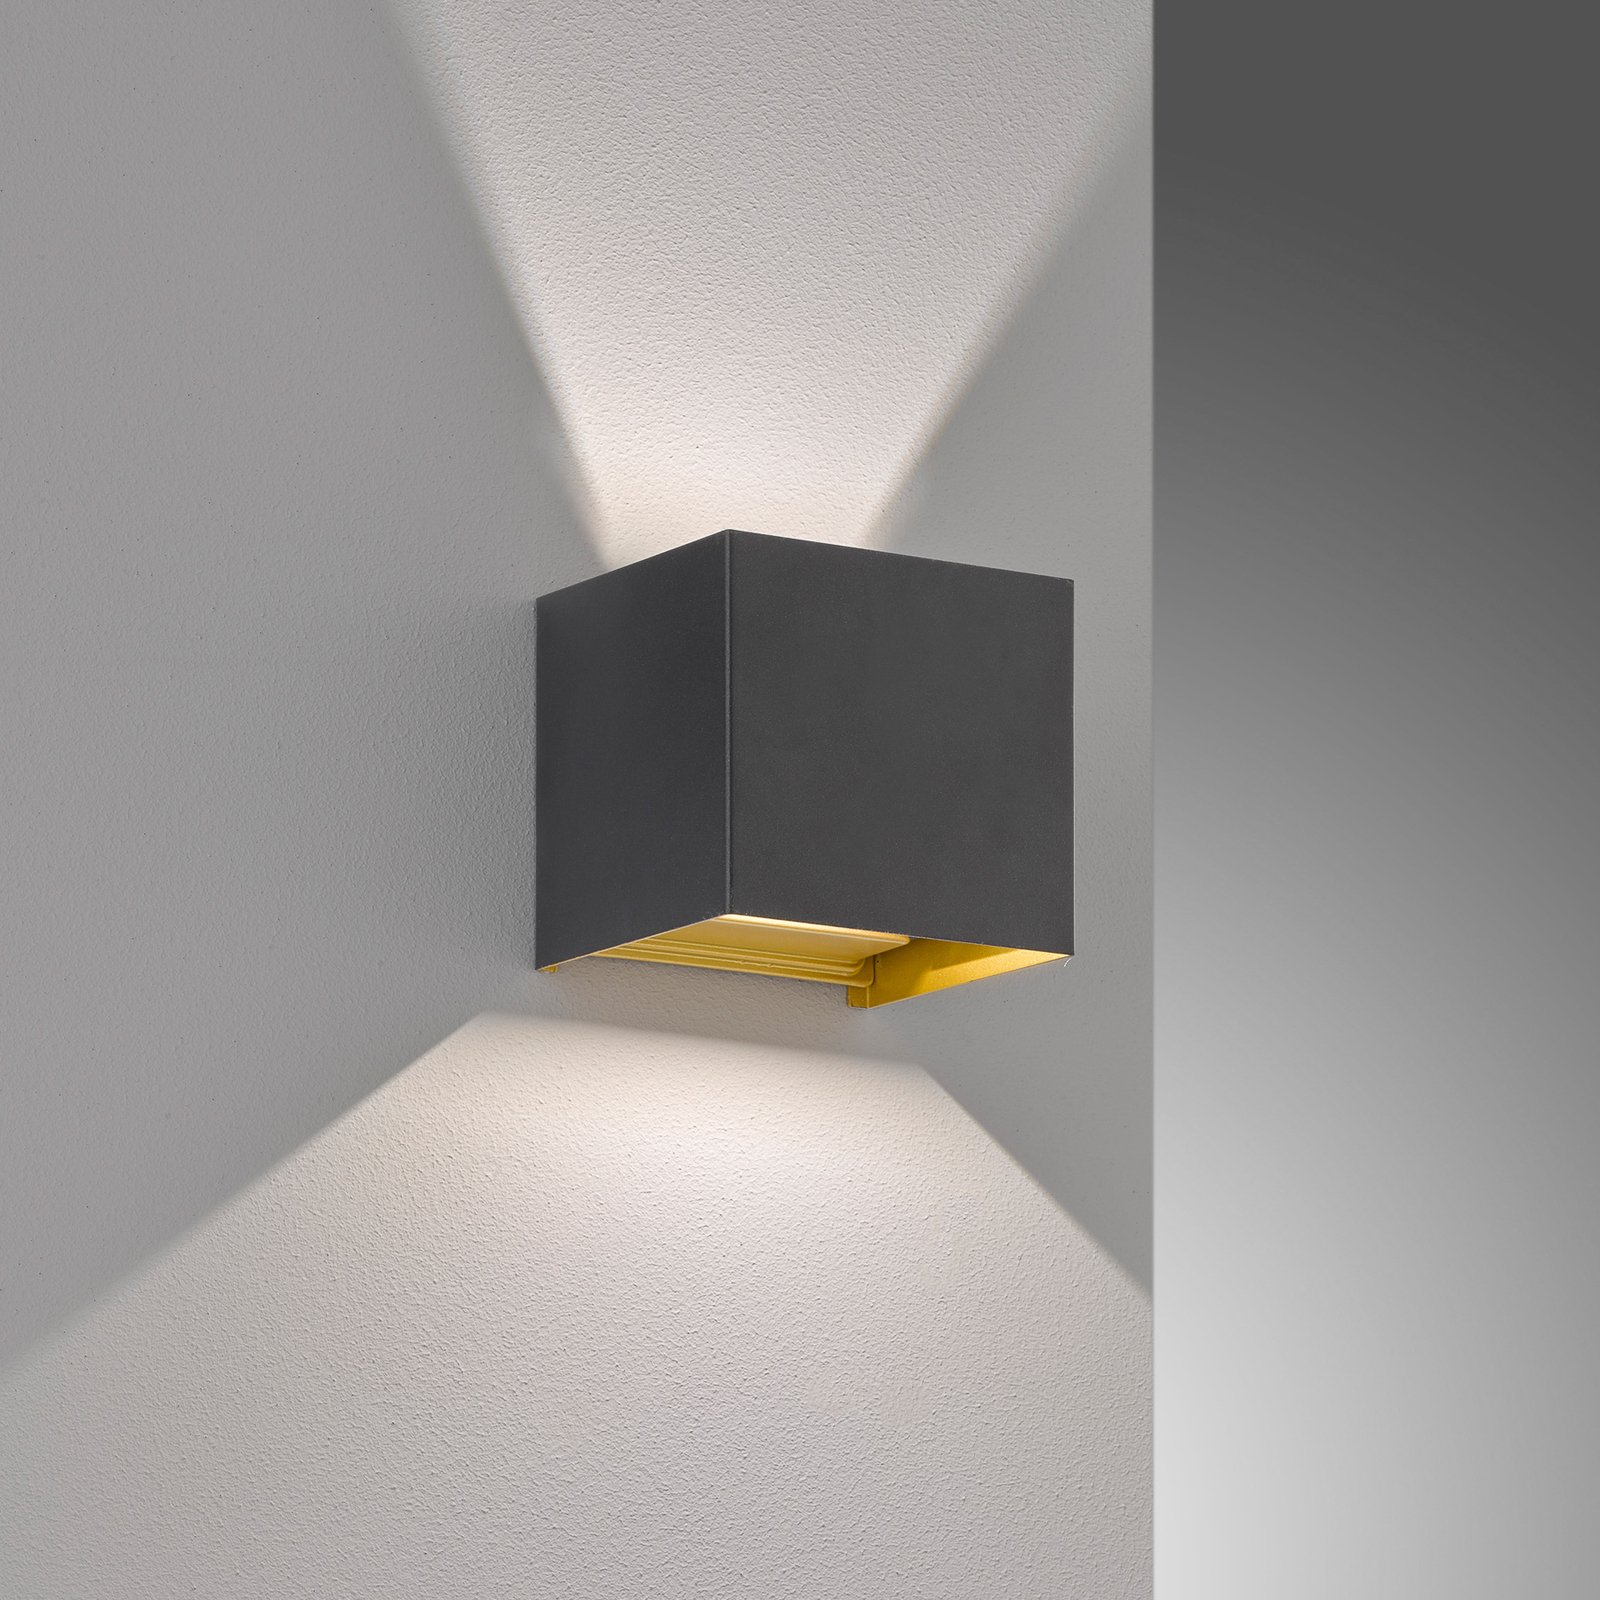 Venkovní nástěnné svítidlo Thore LED, černá/zlatá barva, šířka 11 cm